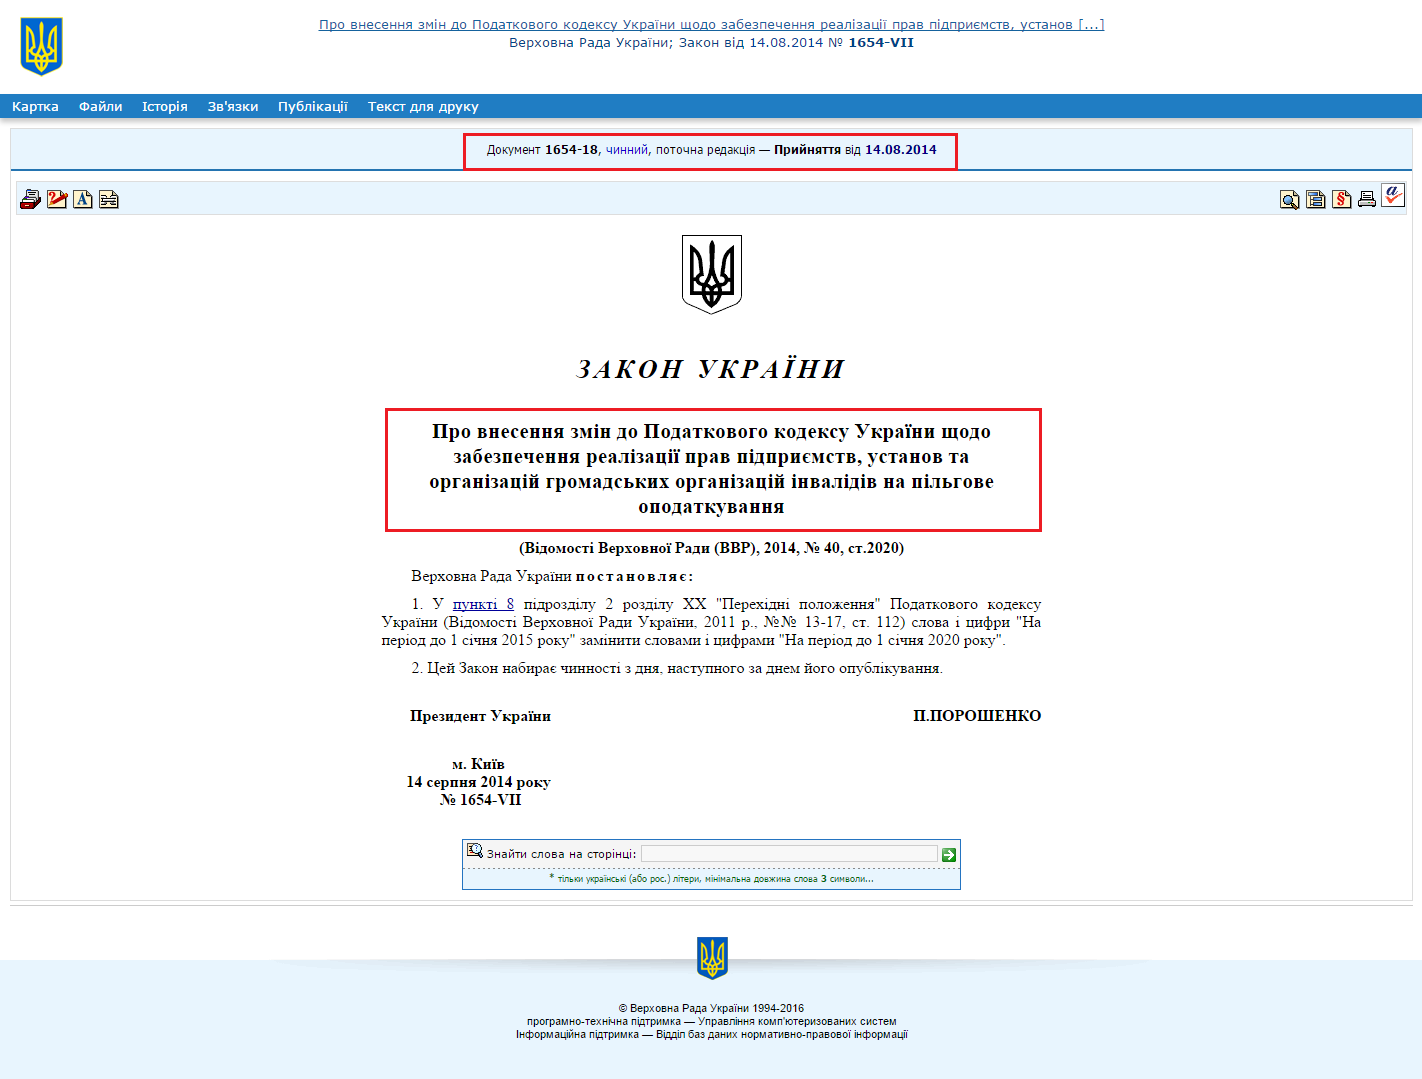 http://zakon0.rada.gov.ua/laws/show/1654-18